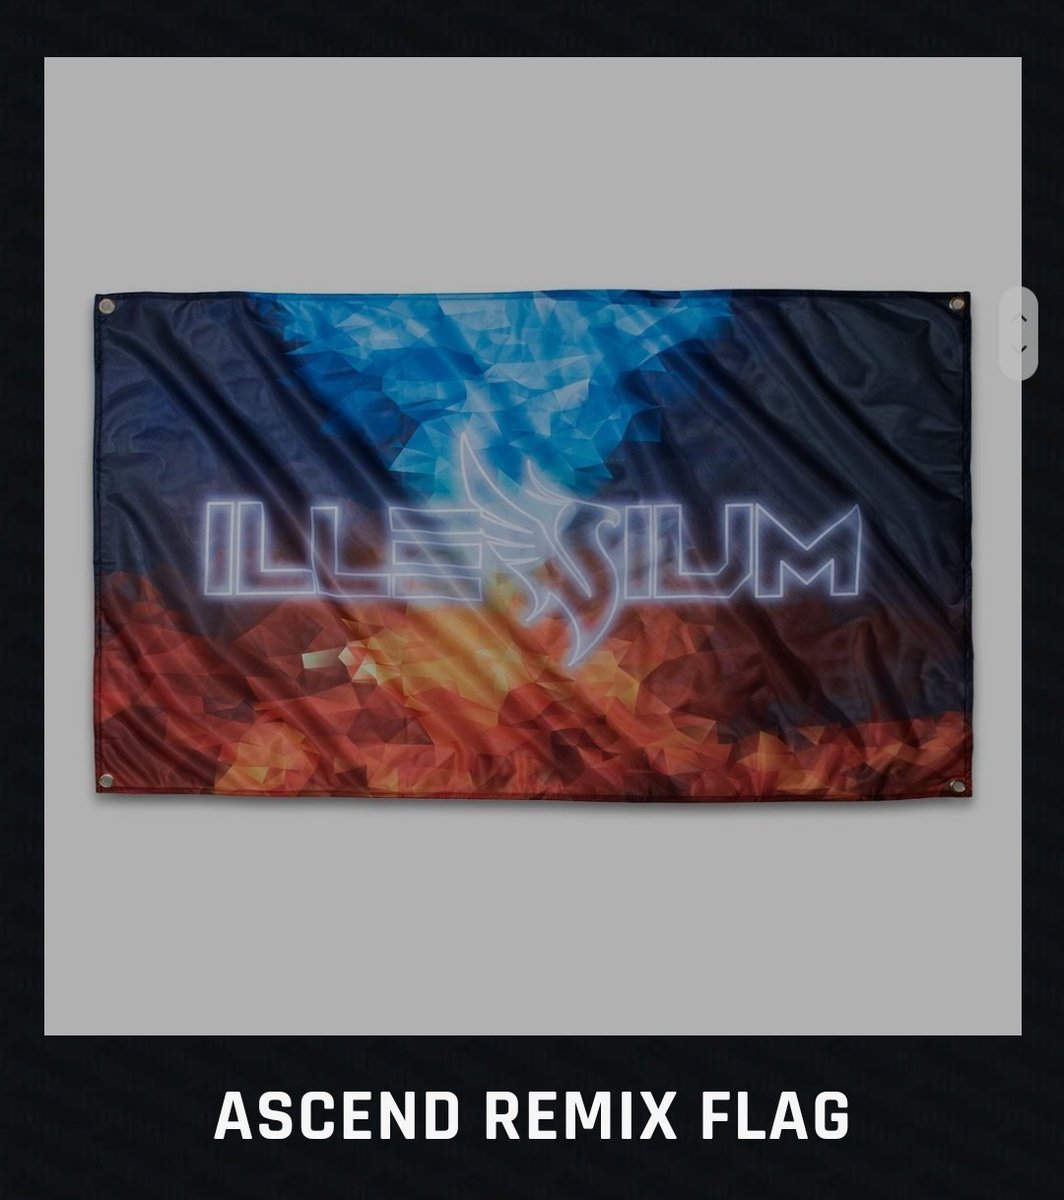 Illenium Flag 